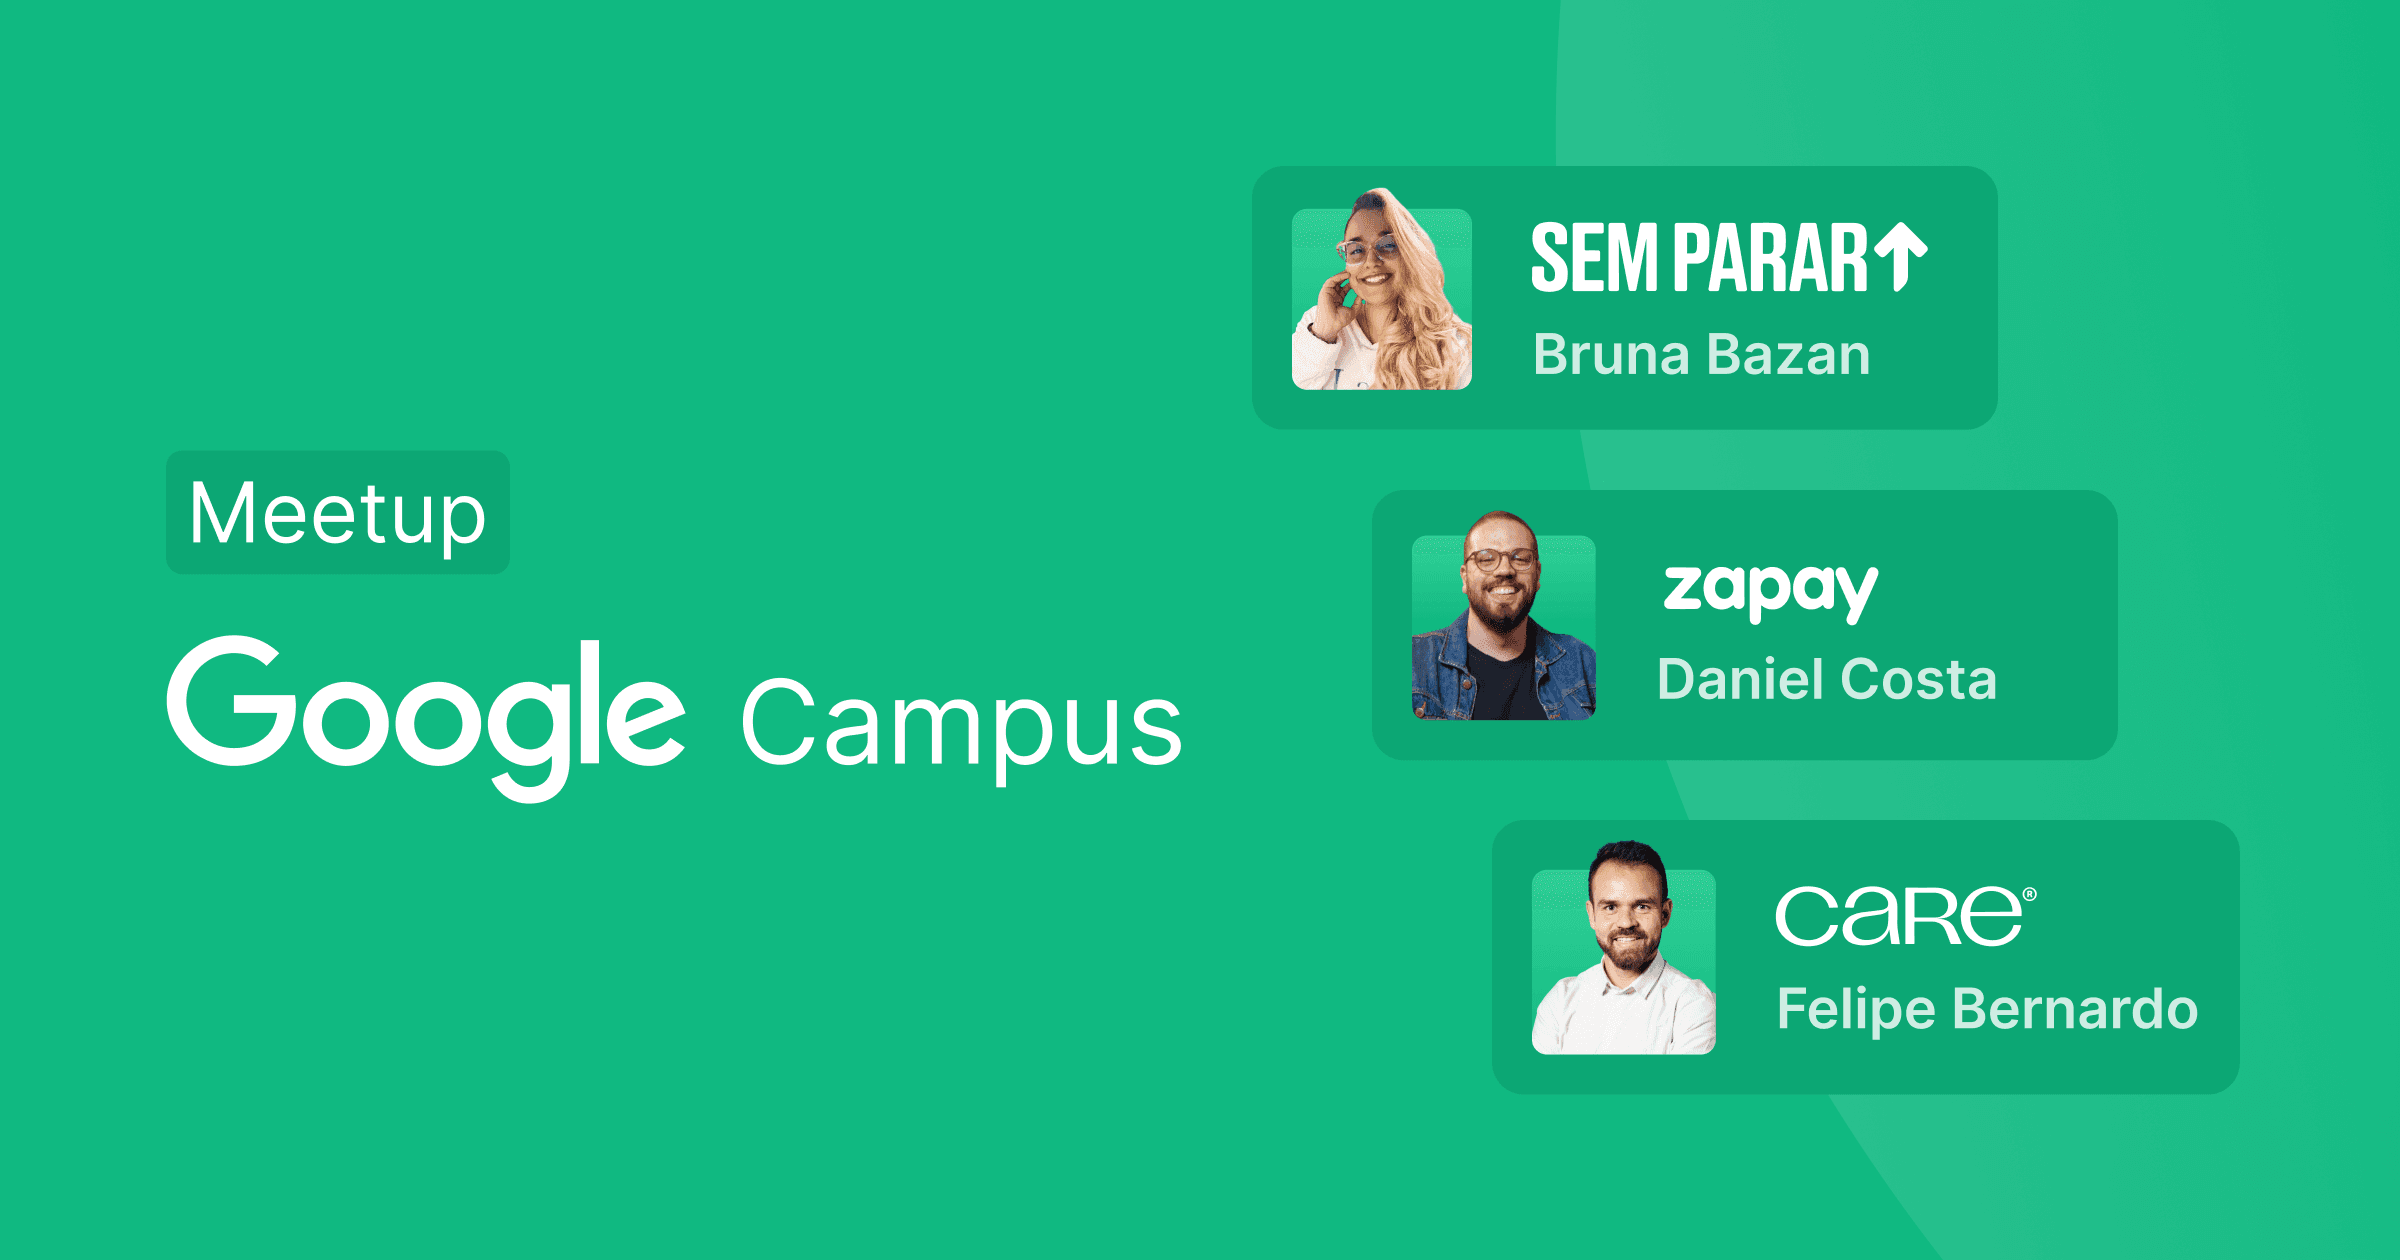 Imagem com fundo verde contendo texto que diz "Meetup Google Campus", além dos avatares de três clientes da Croct, bem como os logos de cada empresa.